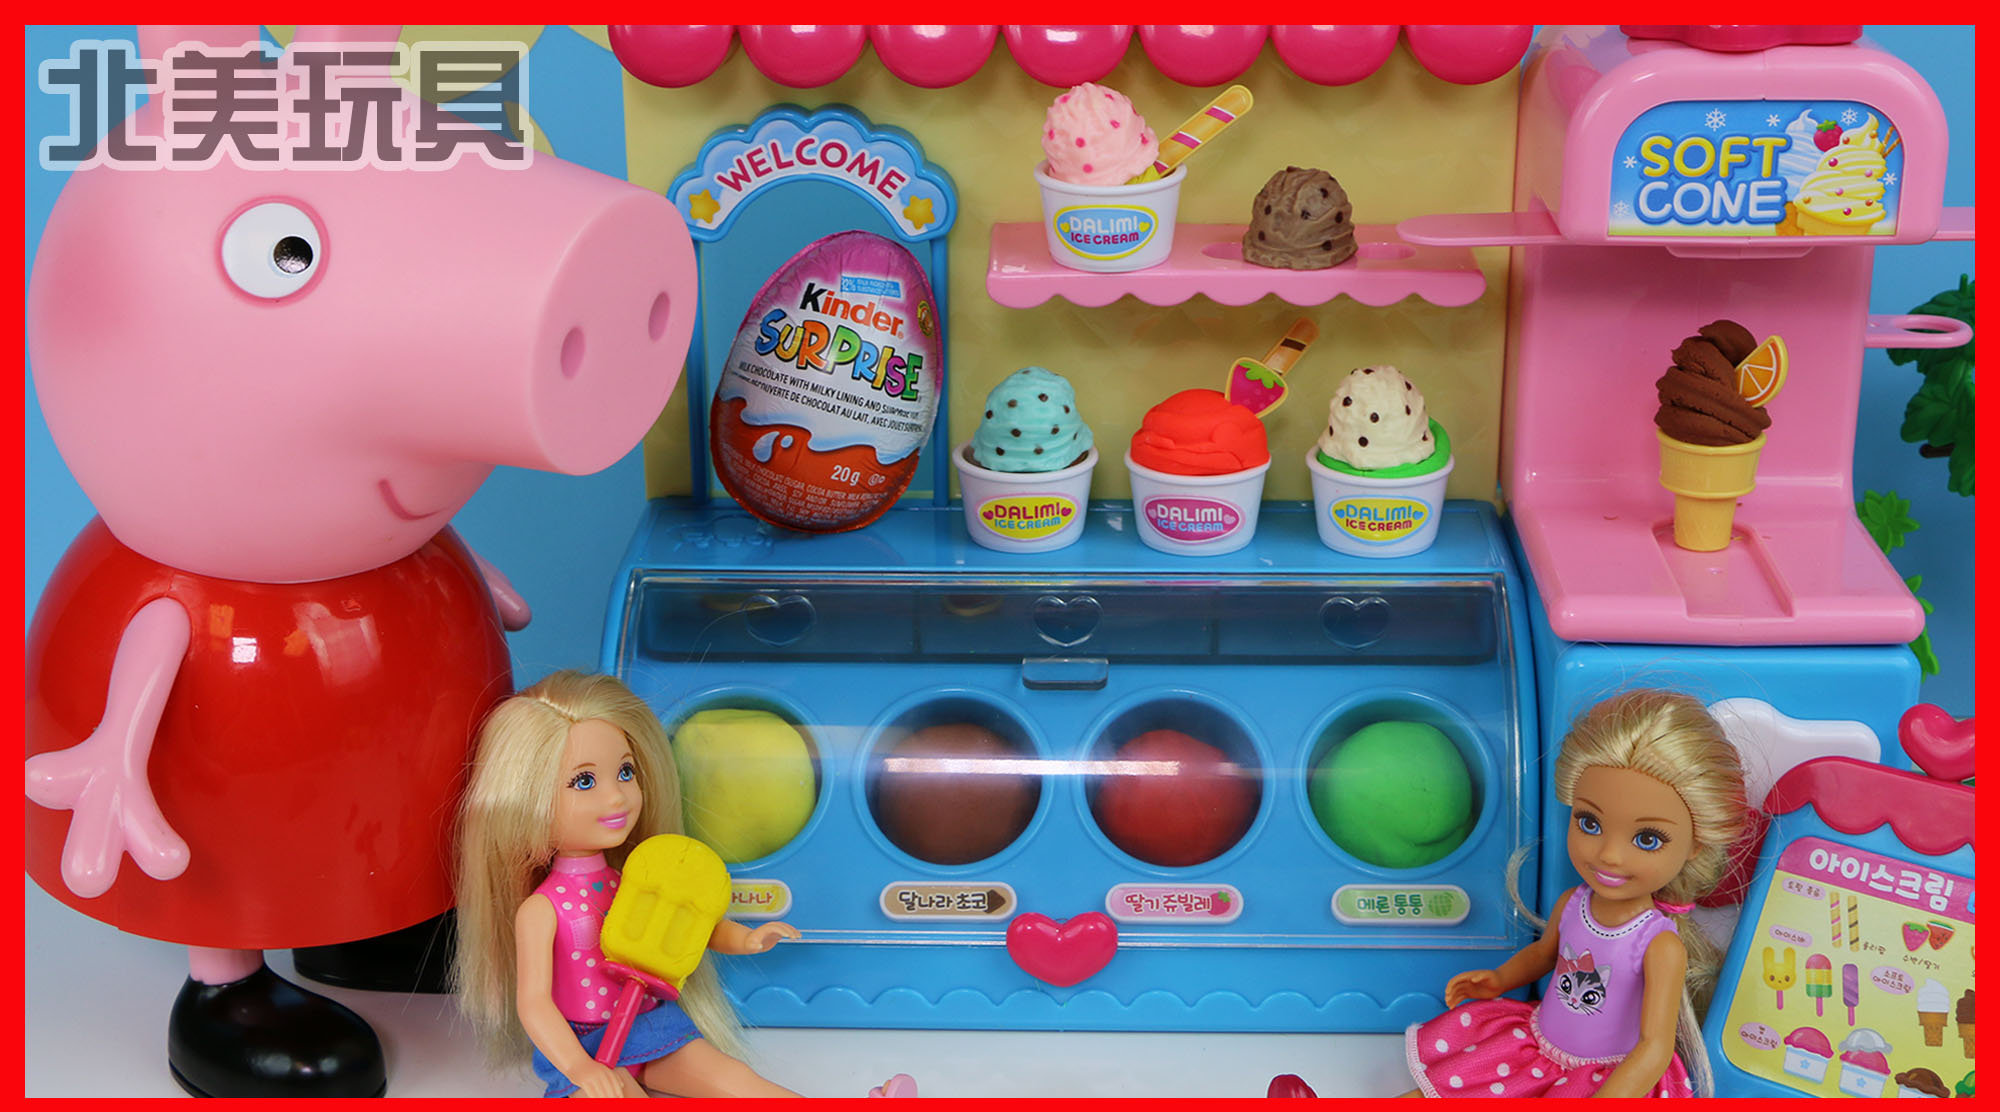 小猪佩奇冰淇淋商店玩具开业了,艾莎公主来买冰淇淋!